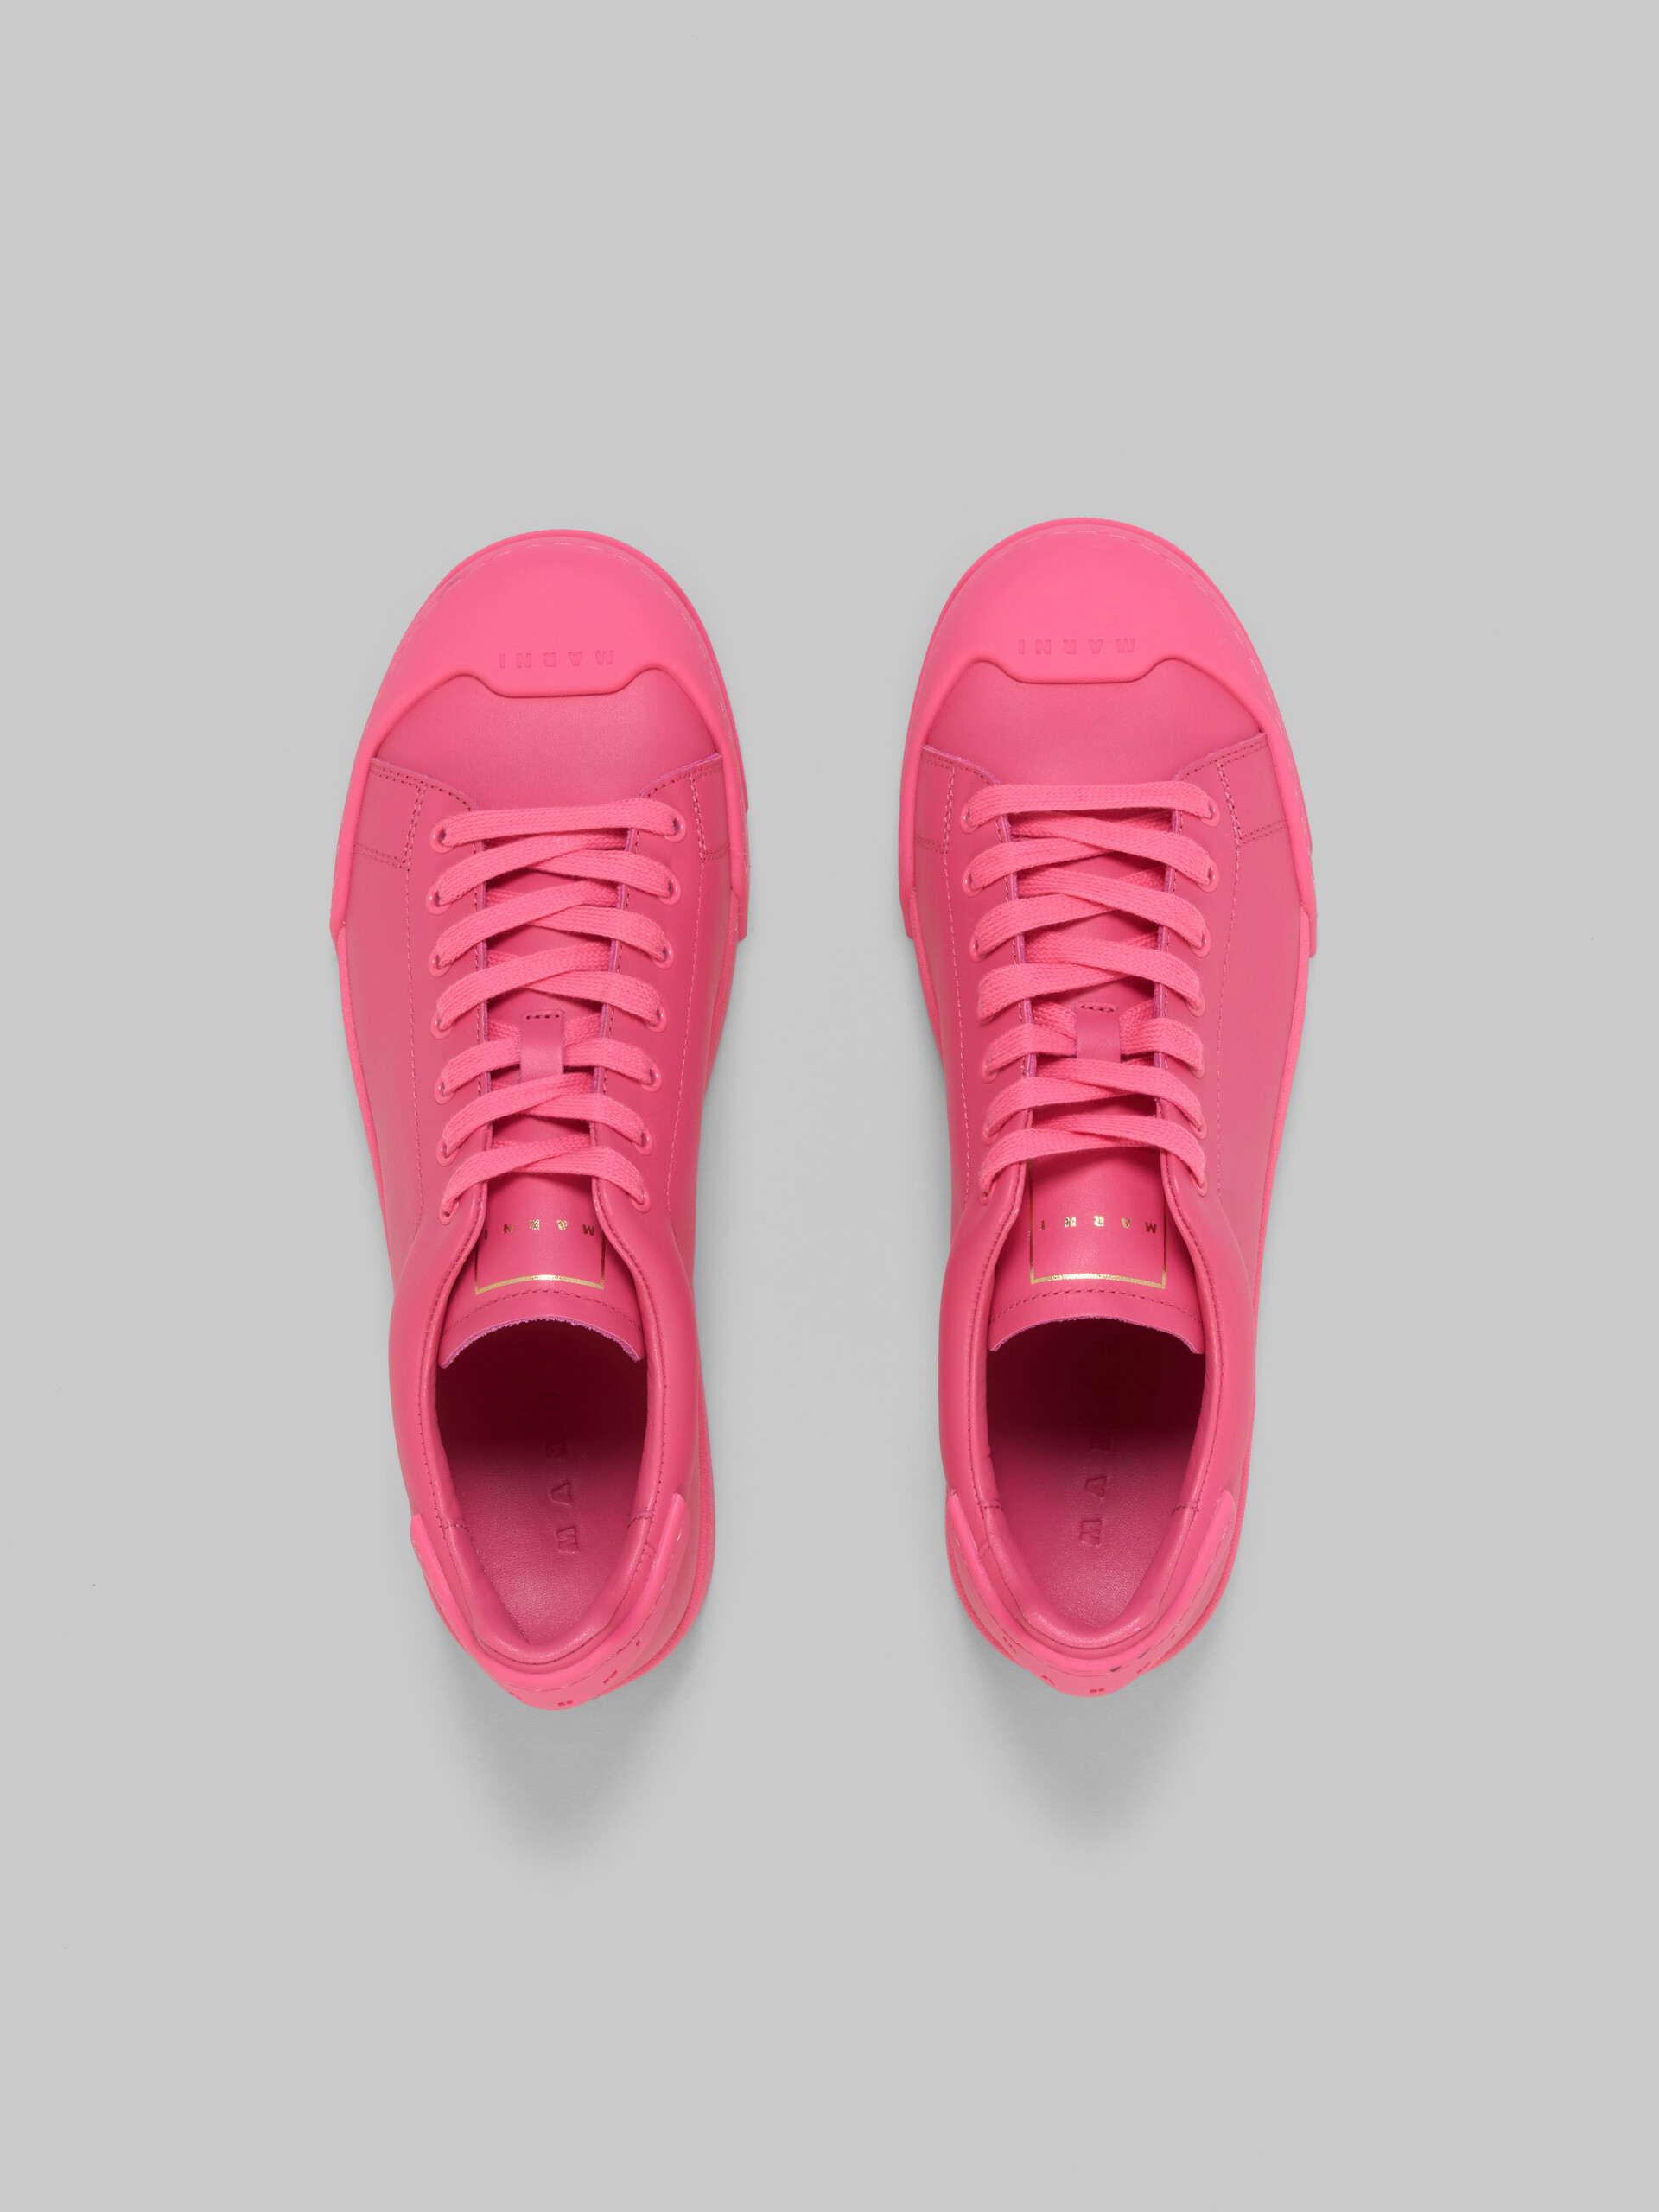 Pinkfarbene Sneakers Dada Bumper aus Leder - Sneakers - Image 4